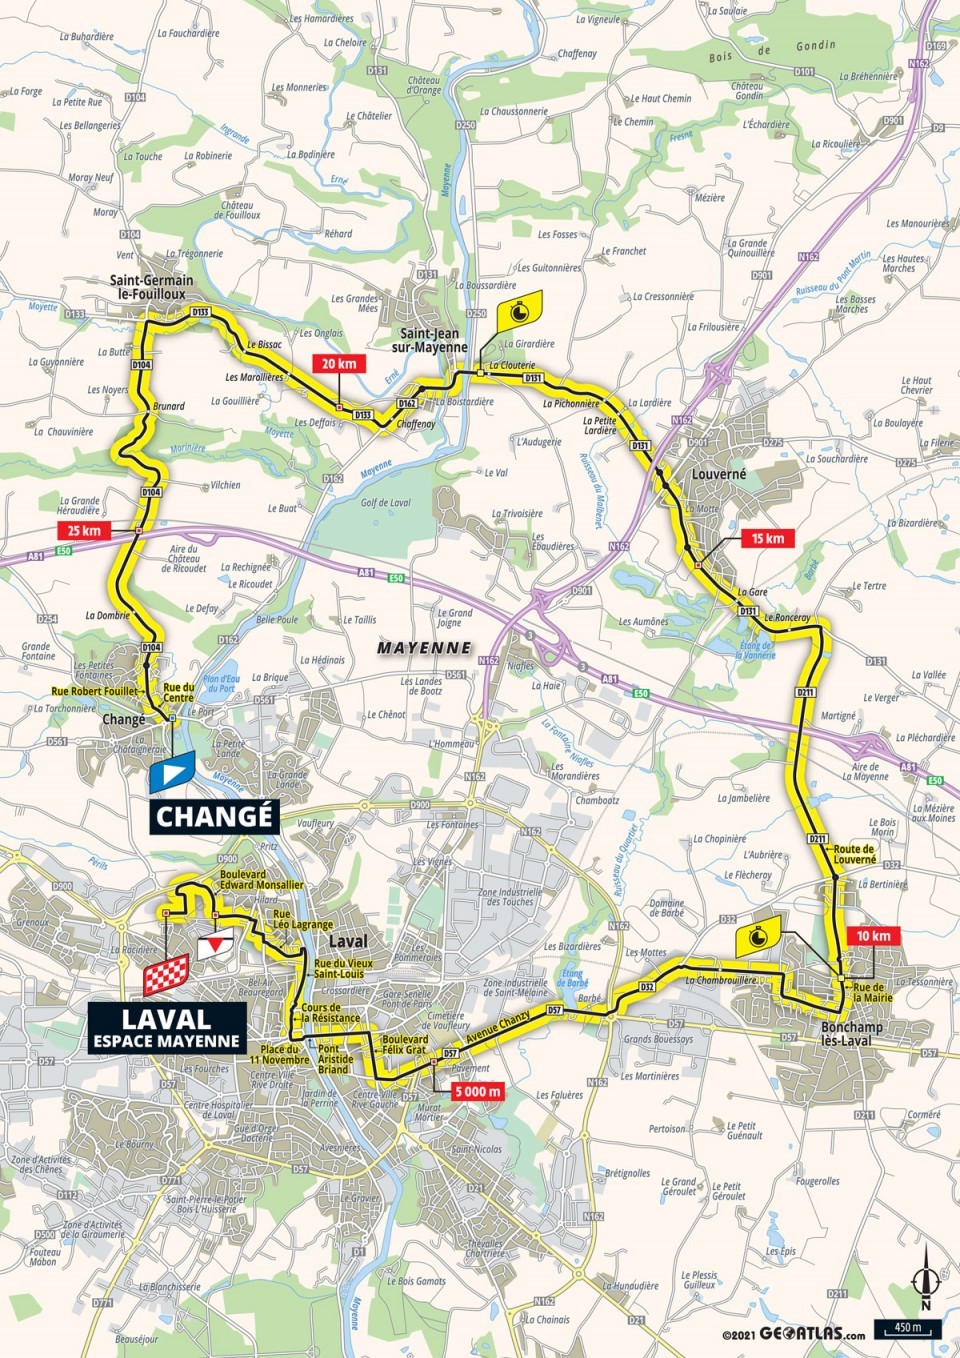 5. etapa na Tour de France 2021 - mapa.